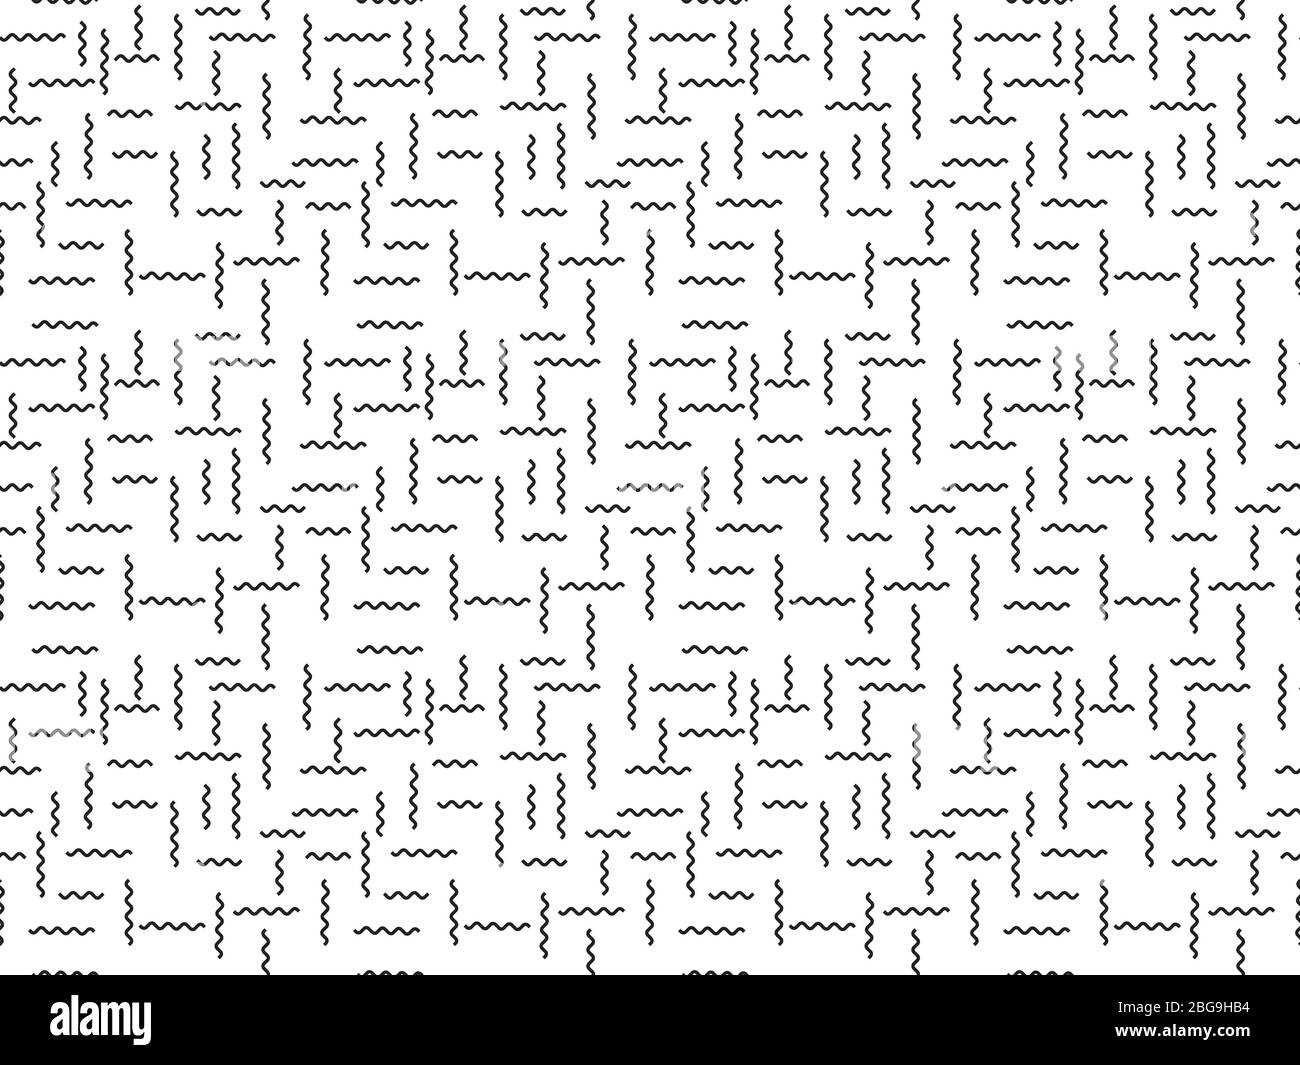 Einfache monochrome nahtlose dekorative Muster der horizontalen schwarzen welligen Linien auf weißem Hintergrund Stock Vektor